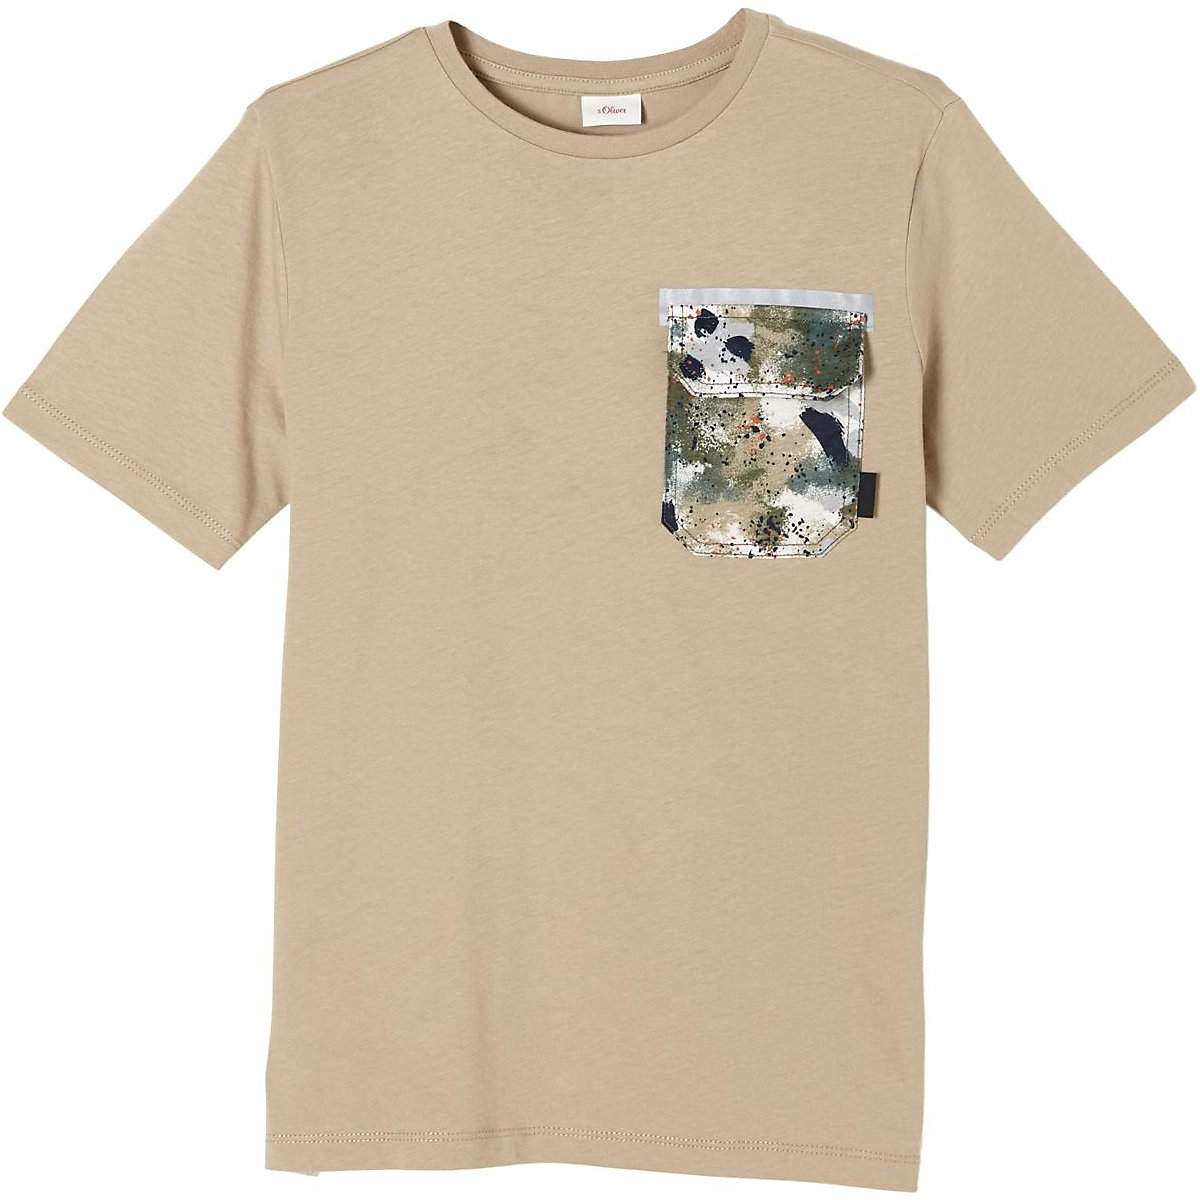 s.Oliver T-Shirt für Jungen beige